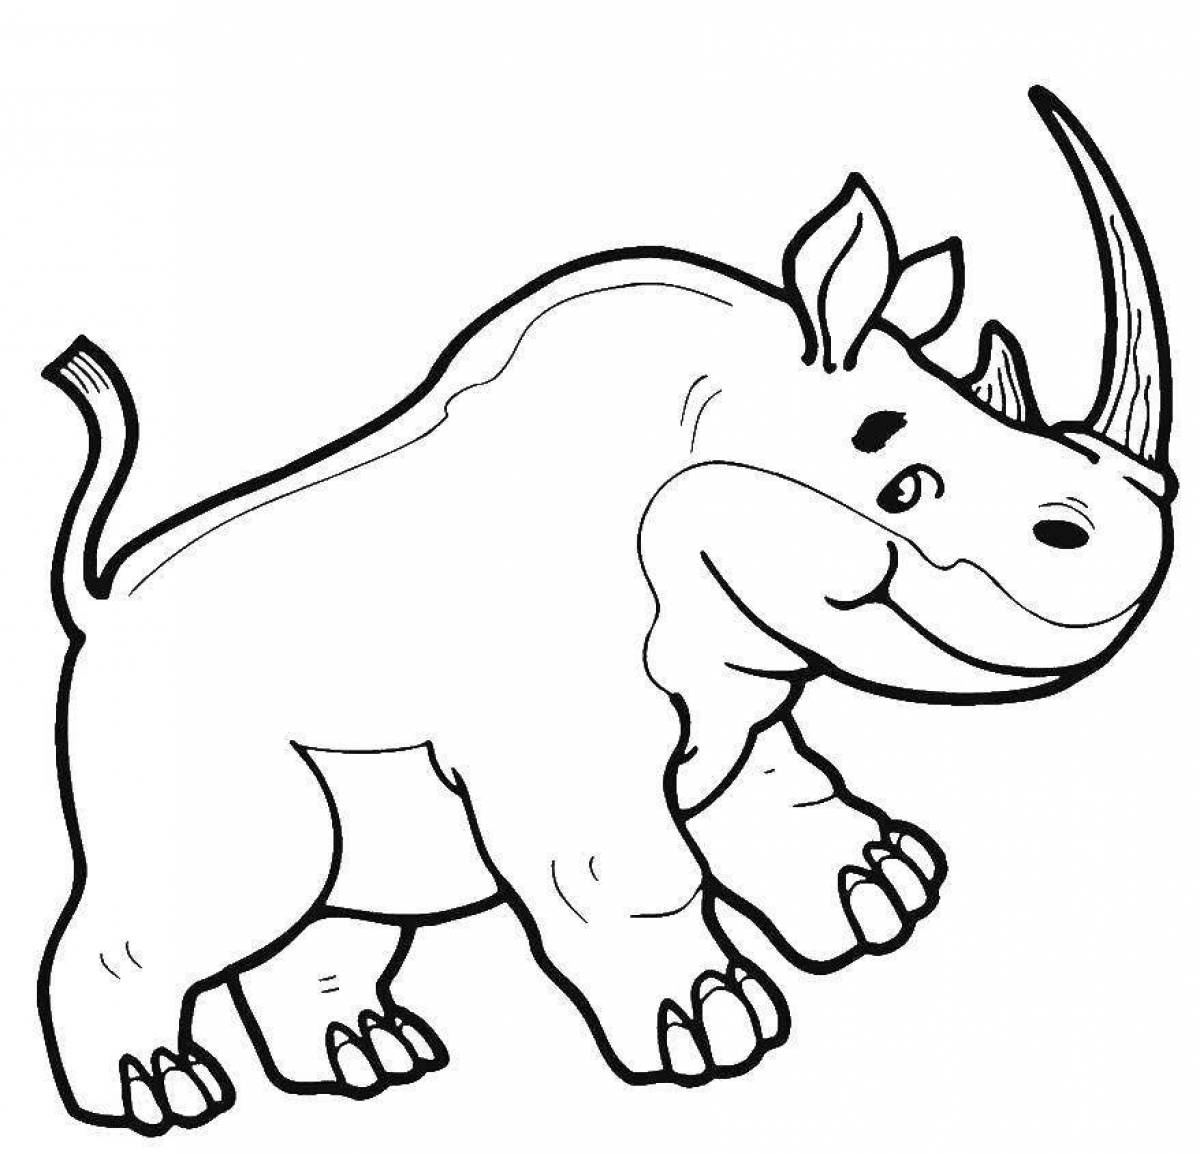 Rhinoceros for kids #1